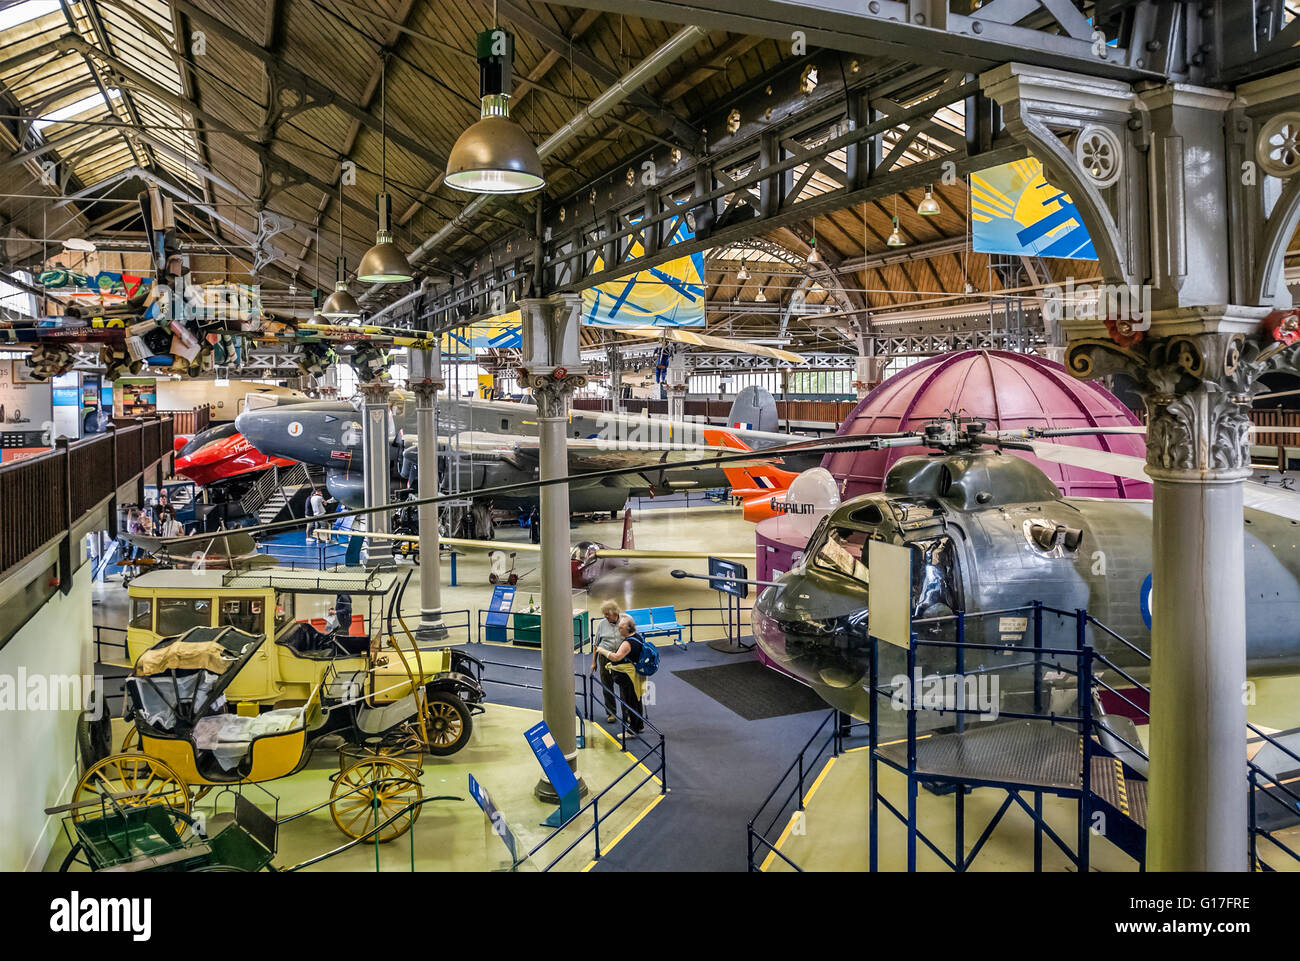 Les avions et les véhicules exposés l'Air & de l'espace au Musée des sciences et de l'industrie à Manchester (Angleterre), MOSI. Banque D'Images